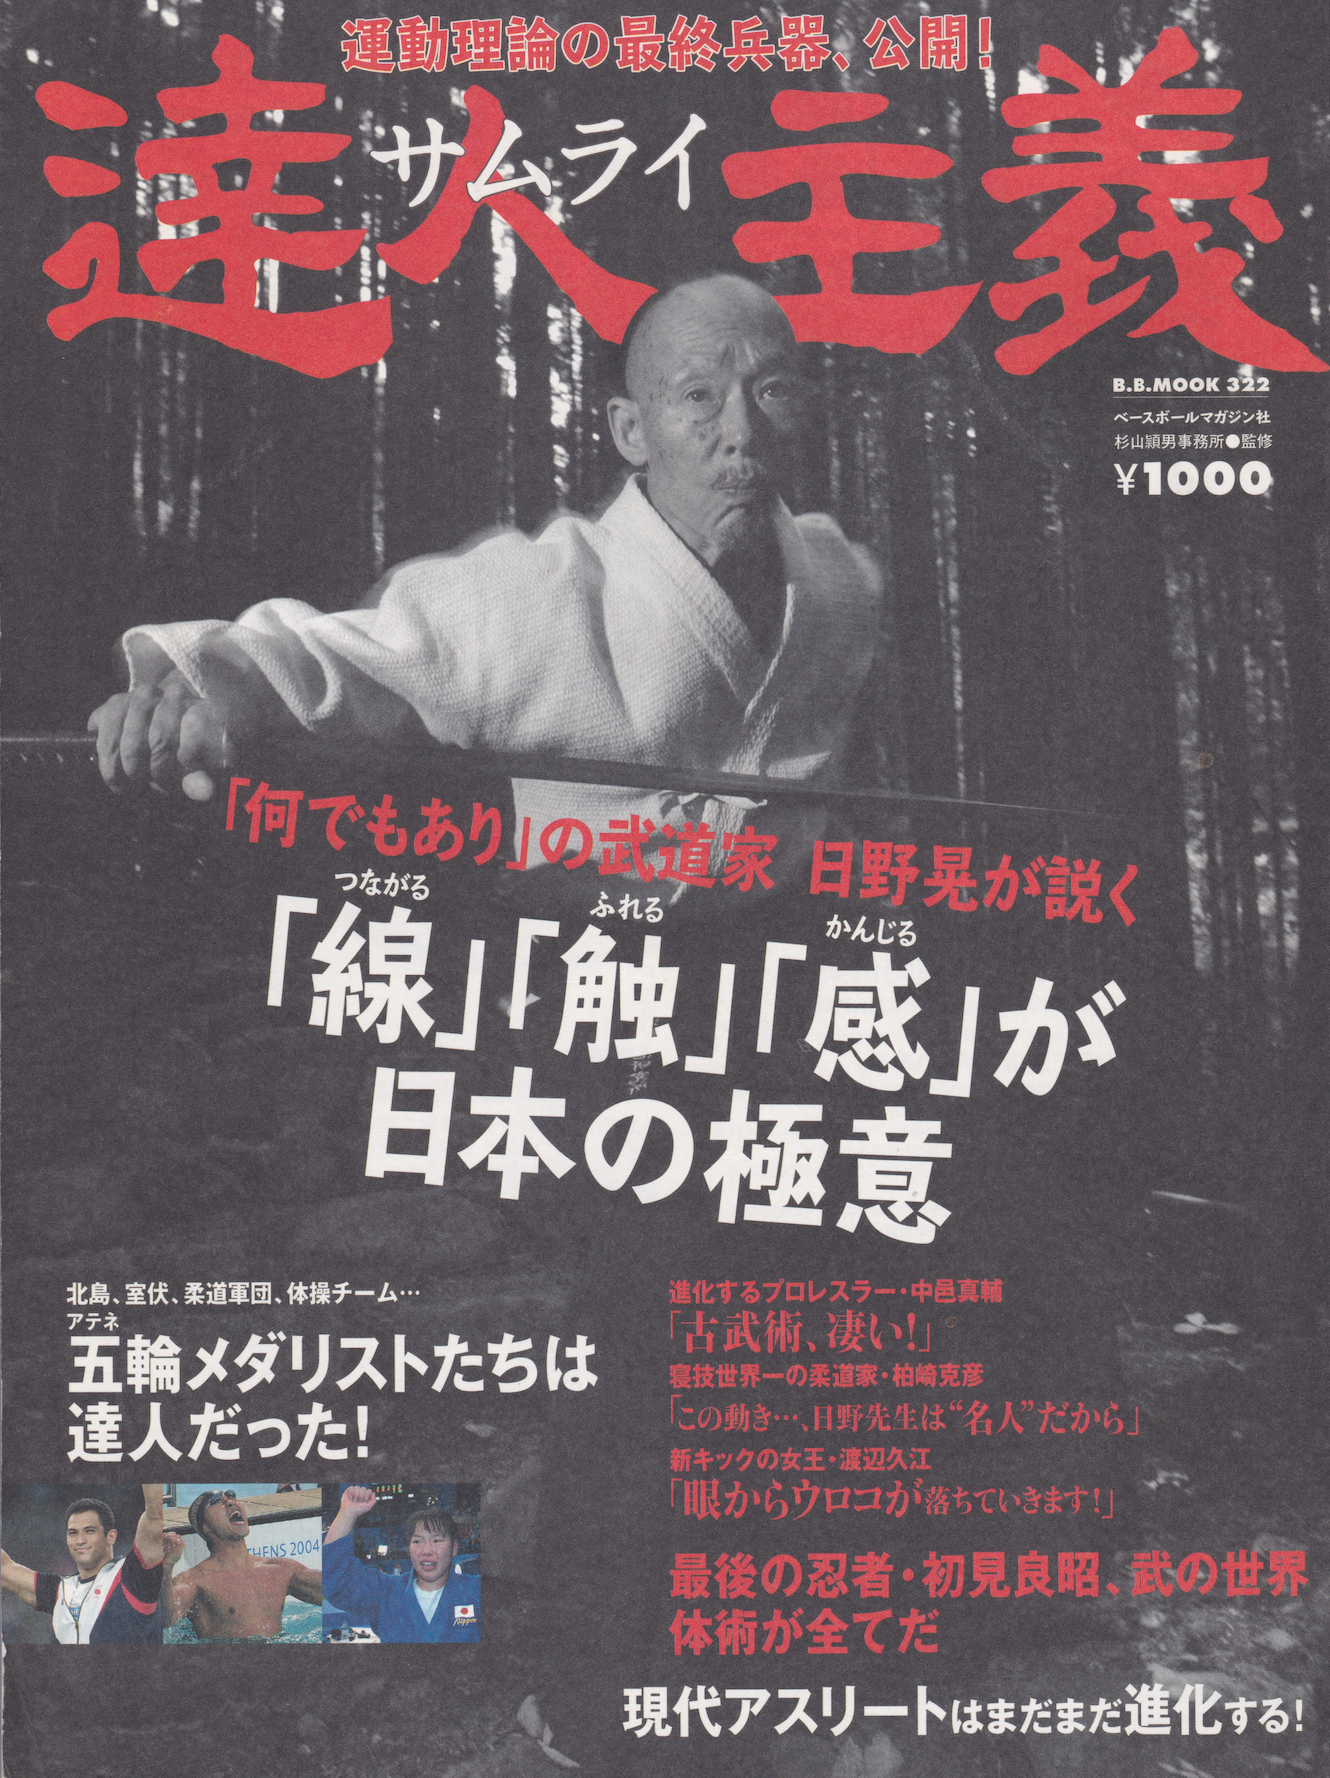 Tatsujin Nyumon (Shugi) Magazine 4 (Preowned)